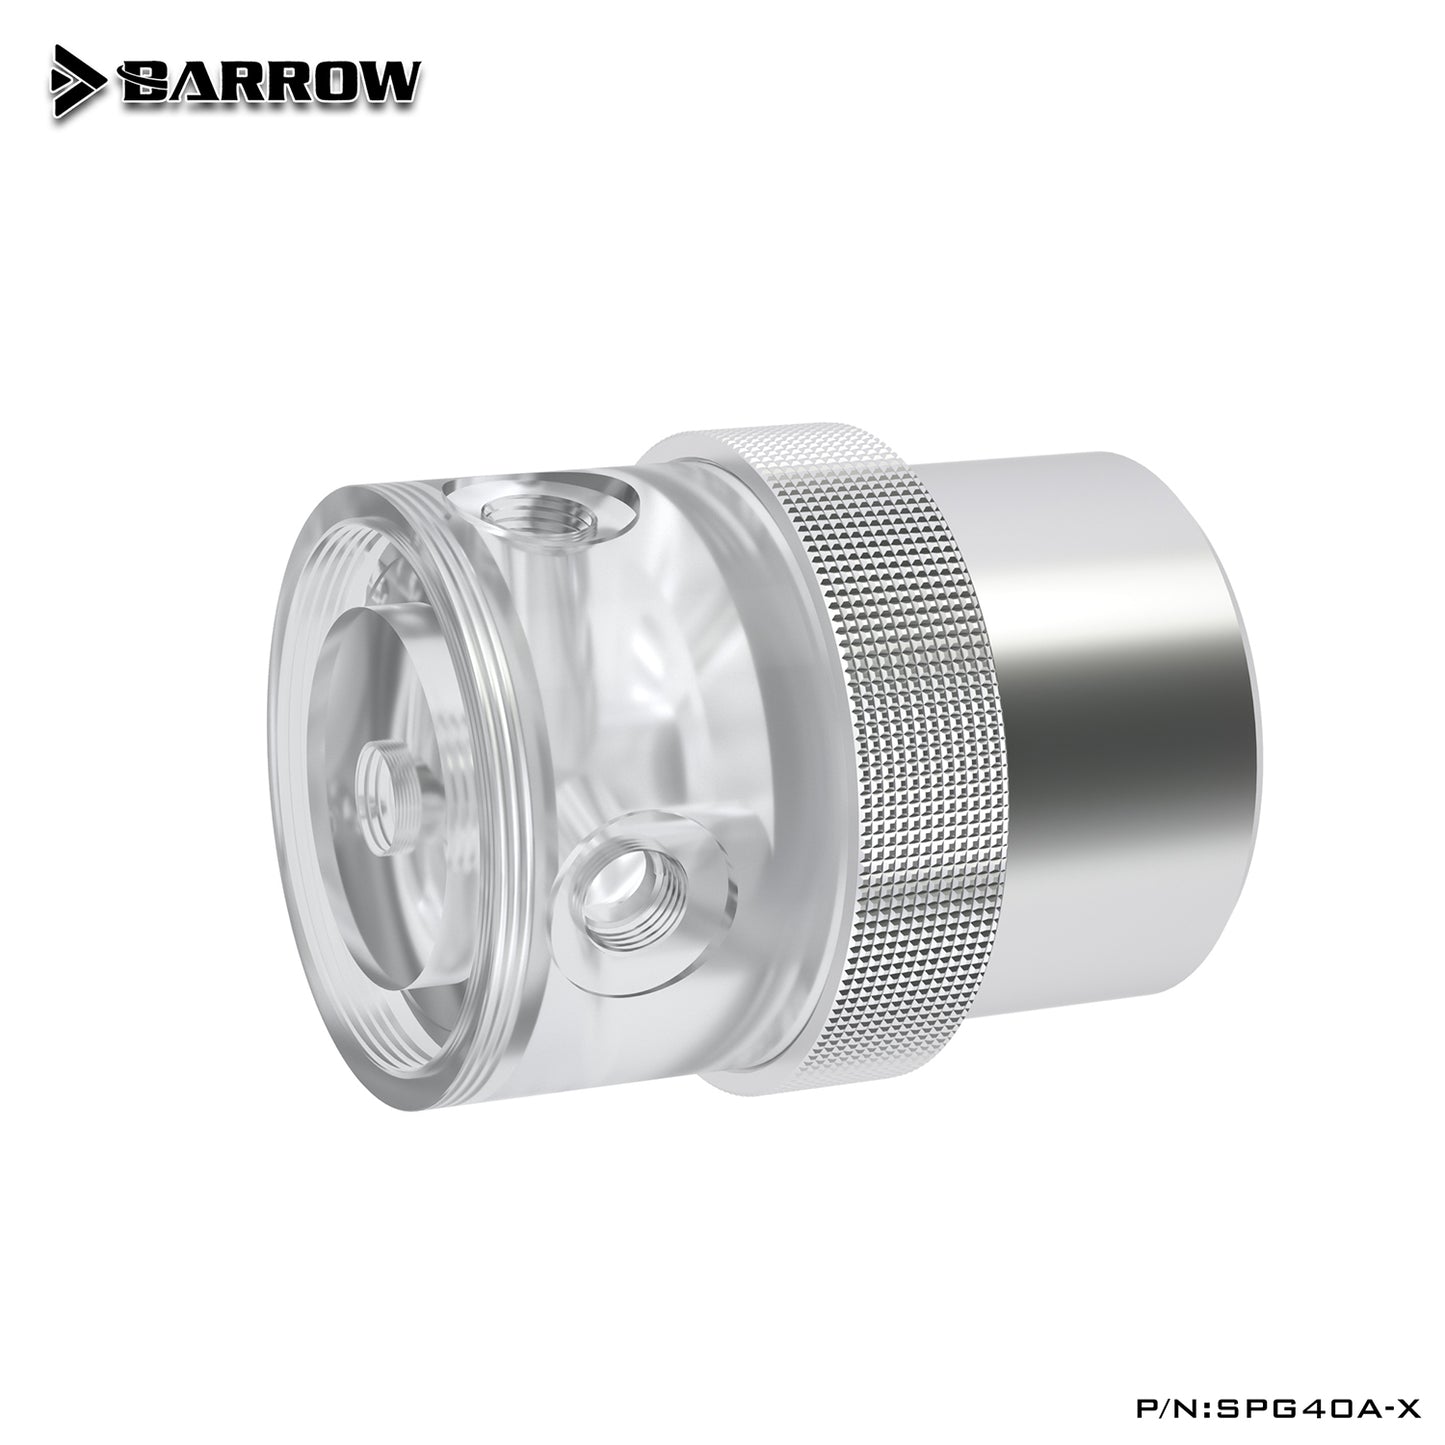 Barrow SPG40A-X, pompes PWM 18 W, débit maximal 1260 L/H, compatible avec les noyaux et composants de pompe de la série D5 